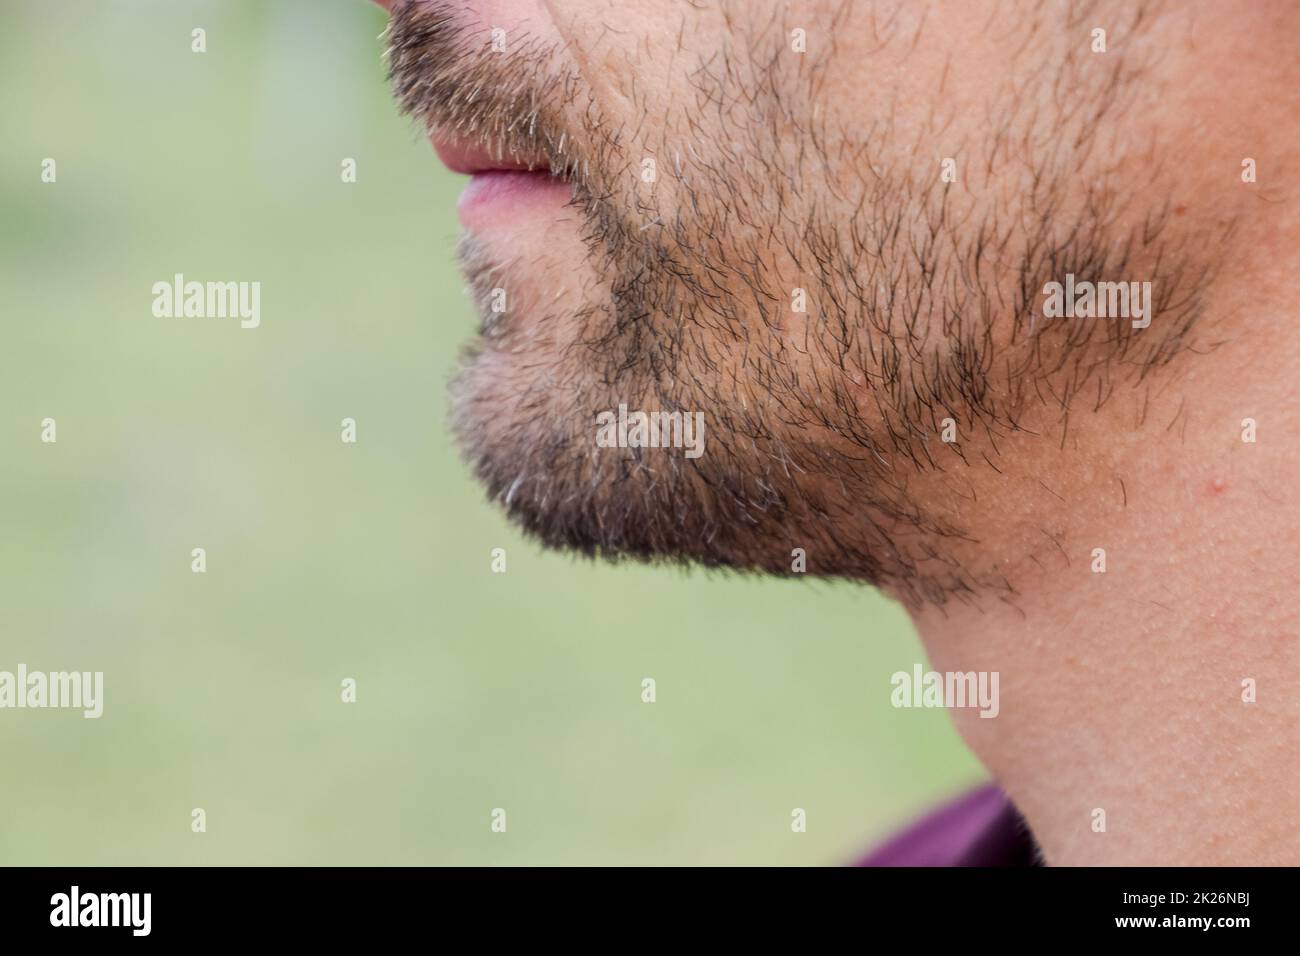 Ein Mann mit Bart. Bart im Gesicht eines jungen Mannes. Stockfoto